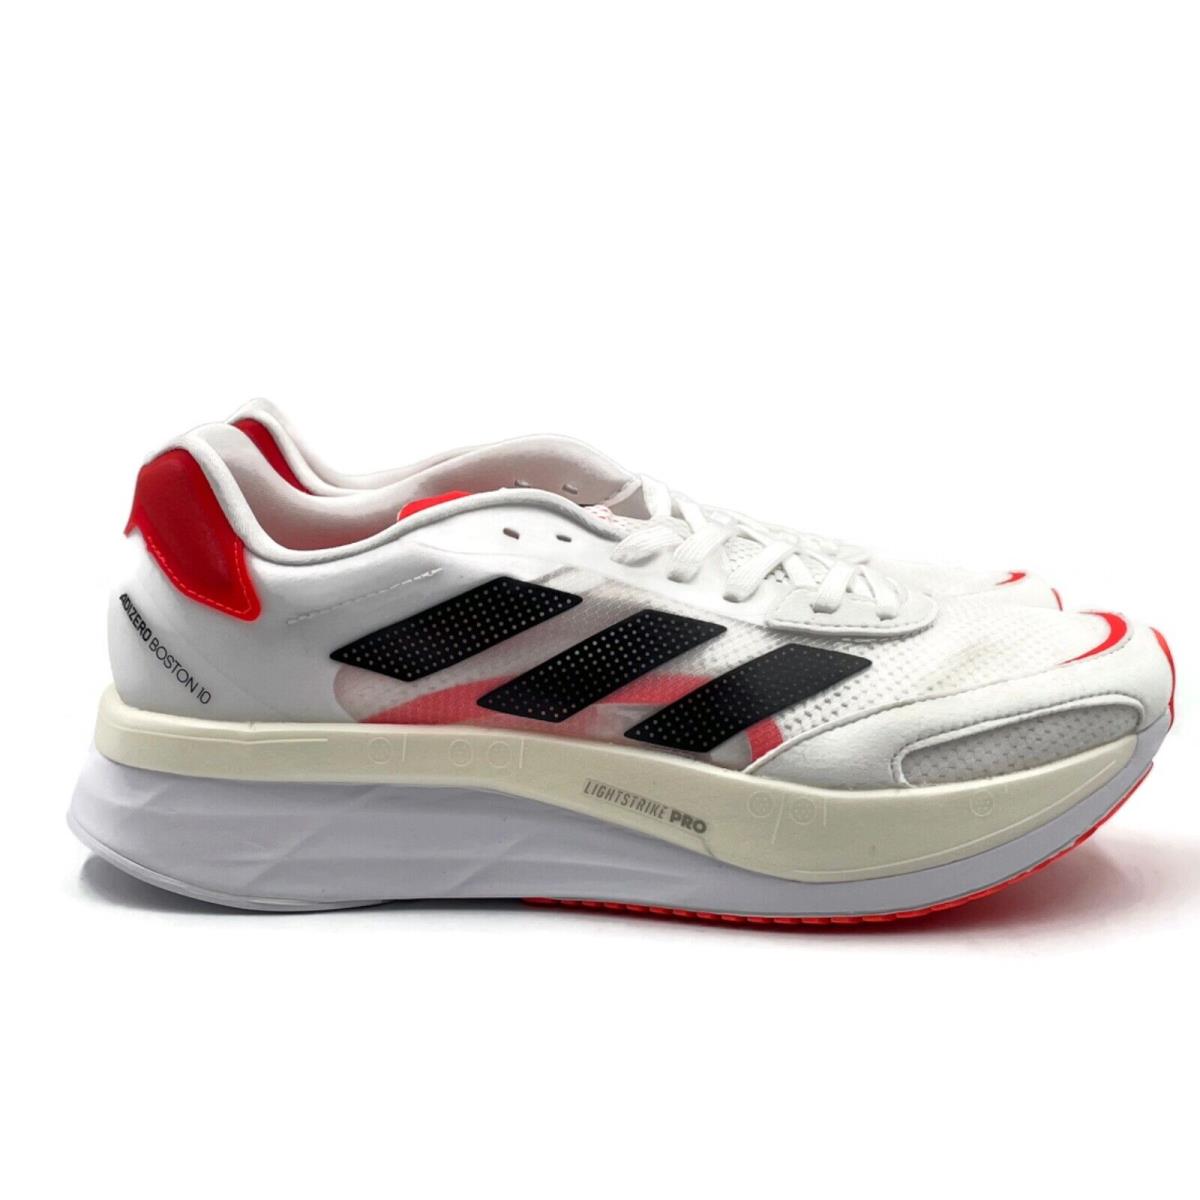 Adidas Adizero Boston 10 Womens Marathon Running Shoe White Red Trainer Sneaker